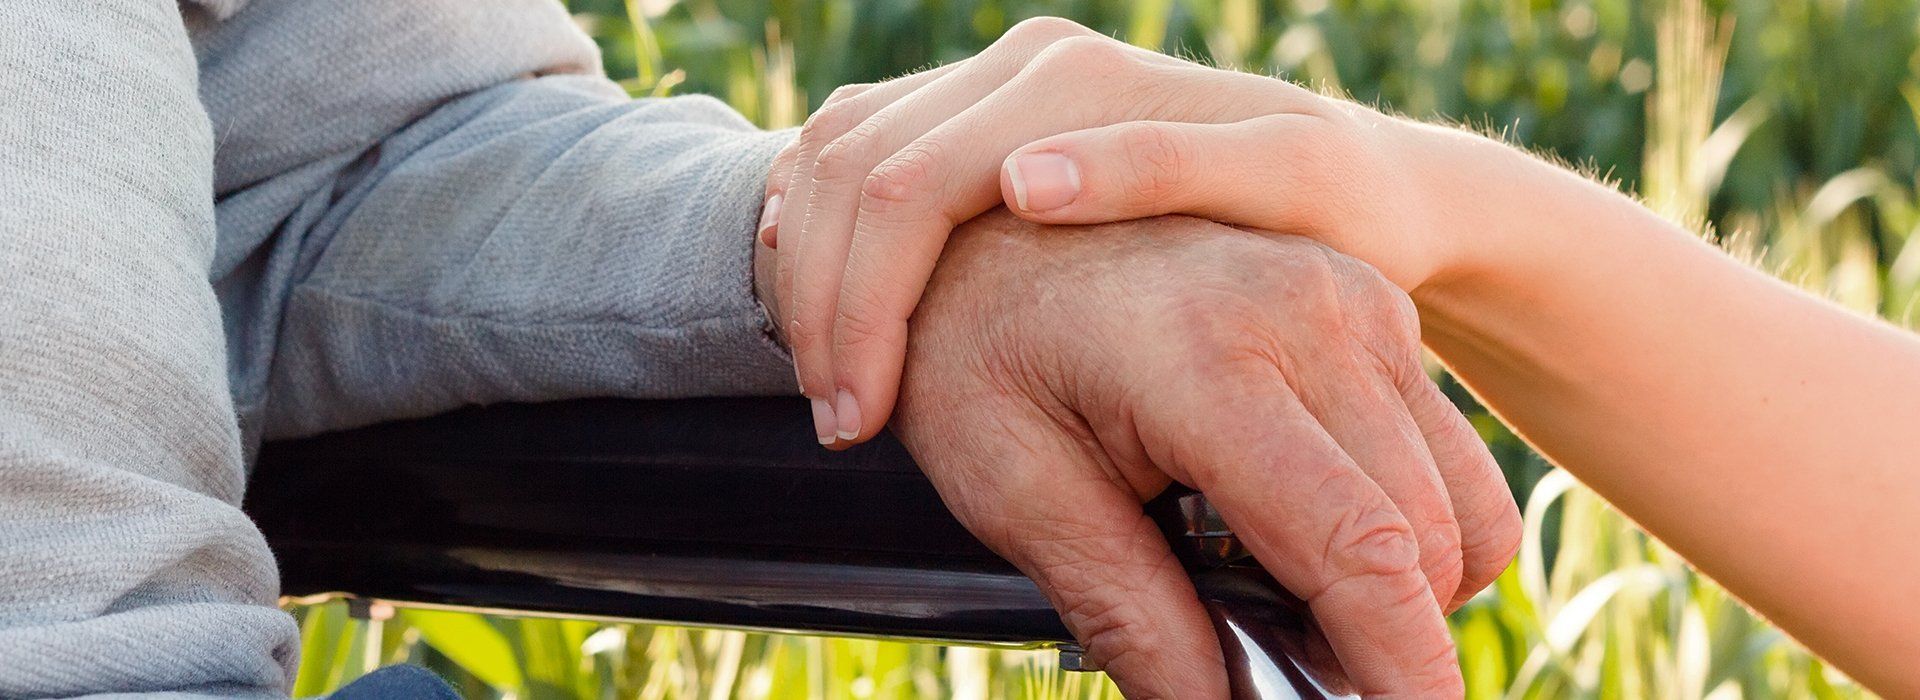 Holding hand of an elderly resident